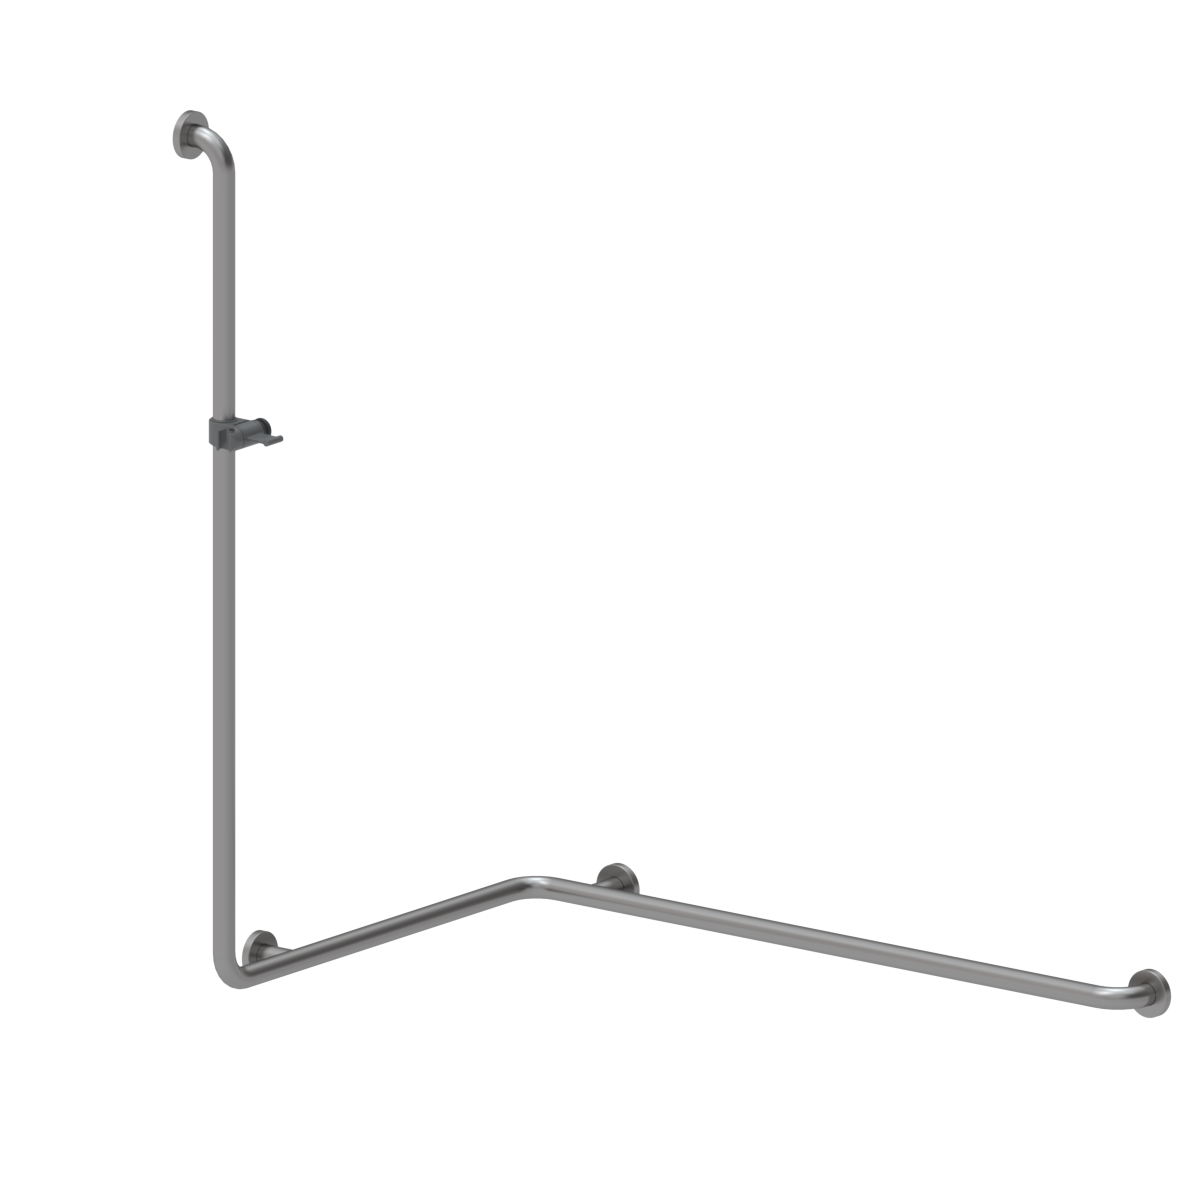 Inox Care Main courante de maintien, avec barre support de douchette, gauche, 1100 x 750 x 1200 mm, Inox, Support de douche en gris foncé (018)